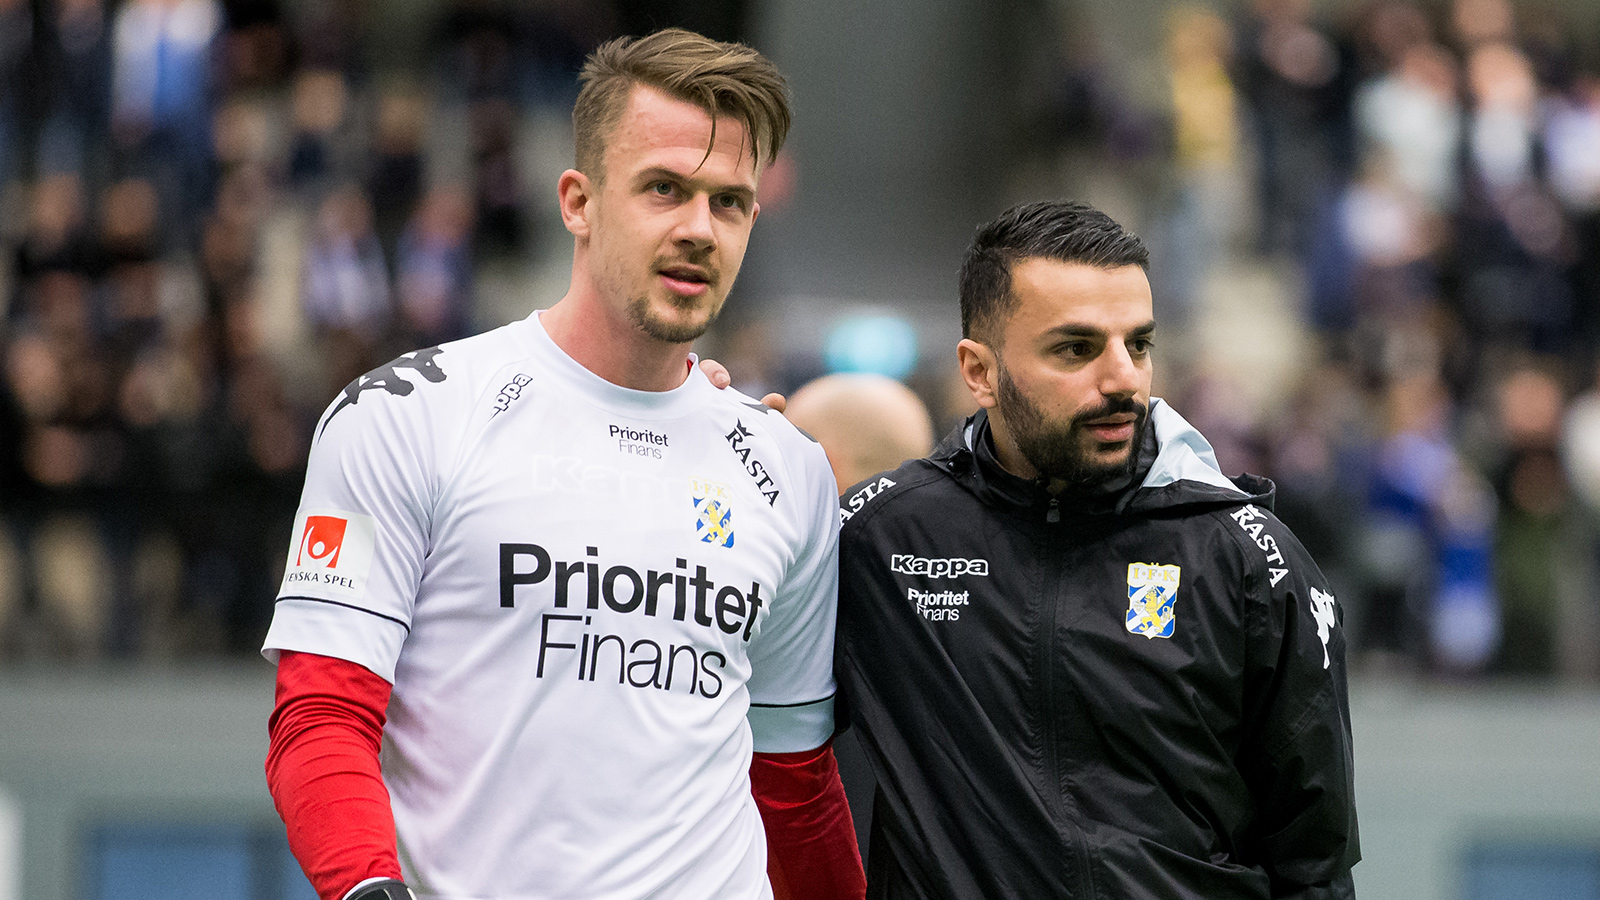 180120 IFK Göteborgs målvakt Erik Dahlin och tränare Poya Asbaghi under en träningsmatch i fotboll mellan IFK Göteborg och Ålborg den 20 januari 2018 i Göteborg.